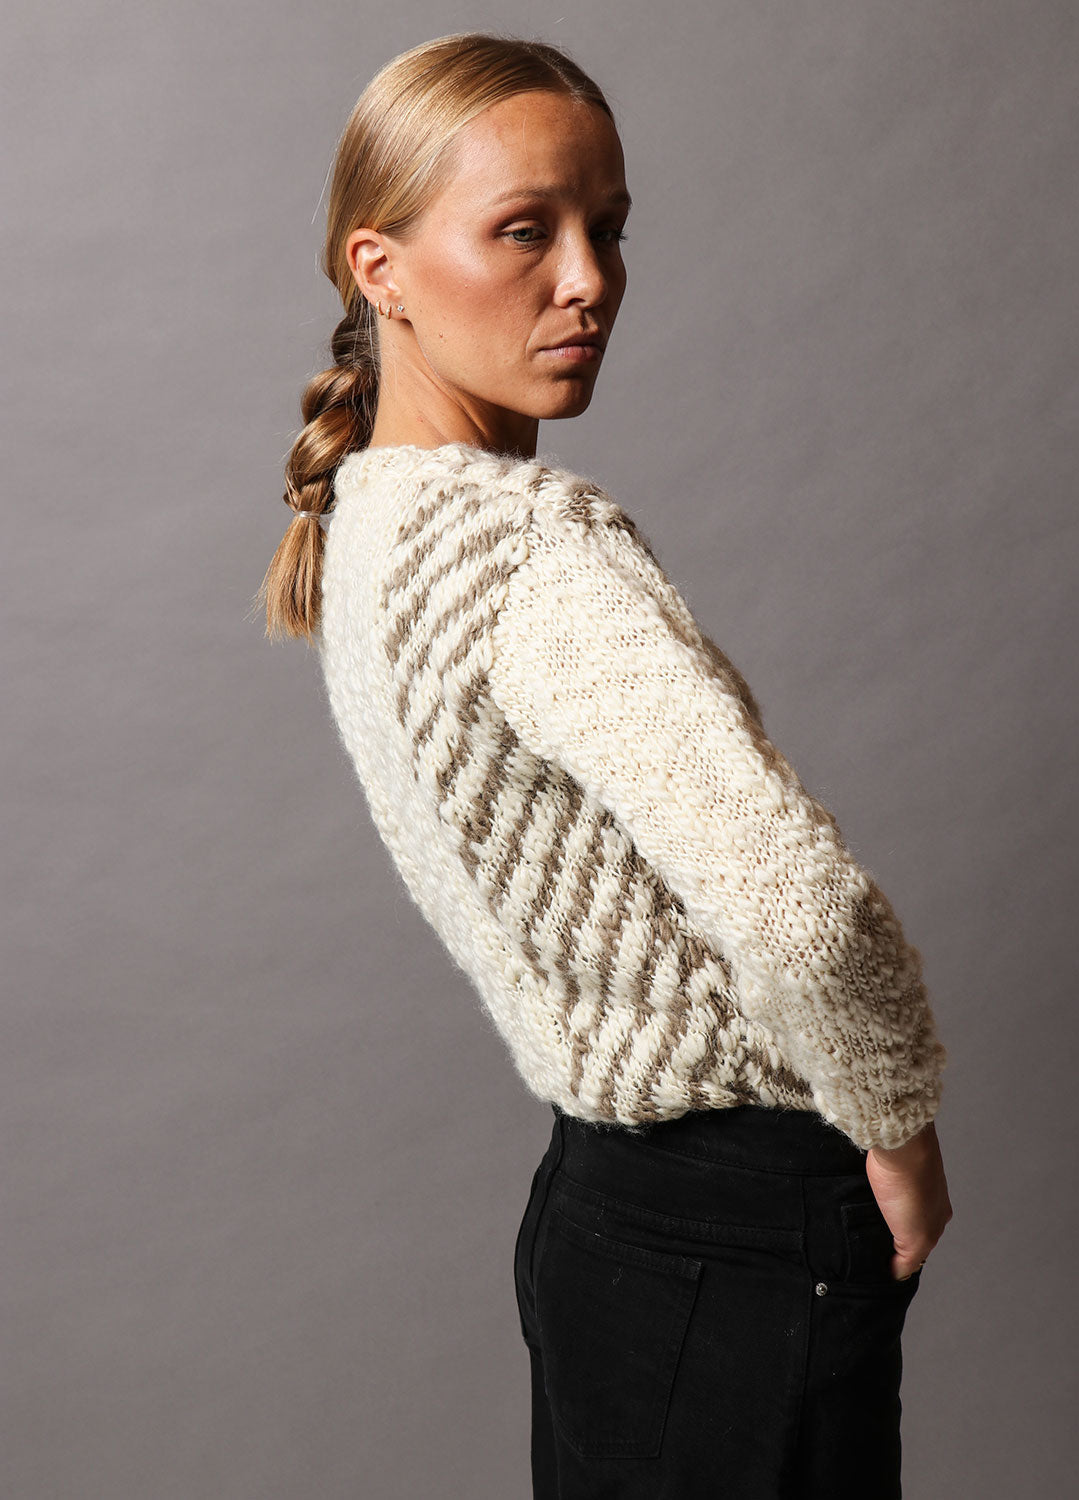 Beaufort Sweater Digital Pattern